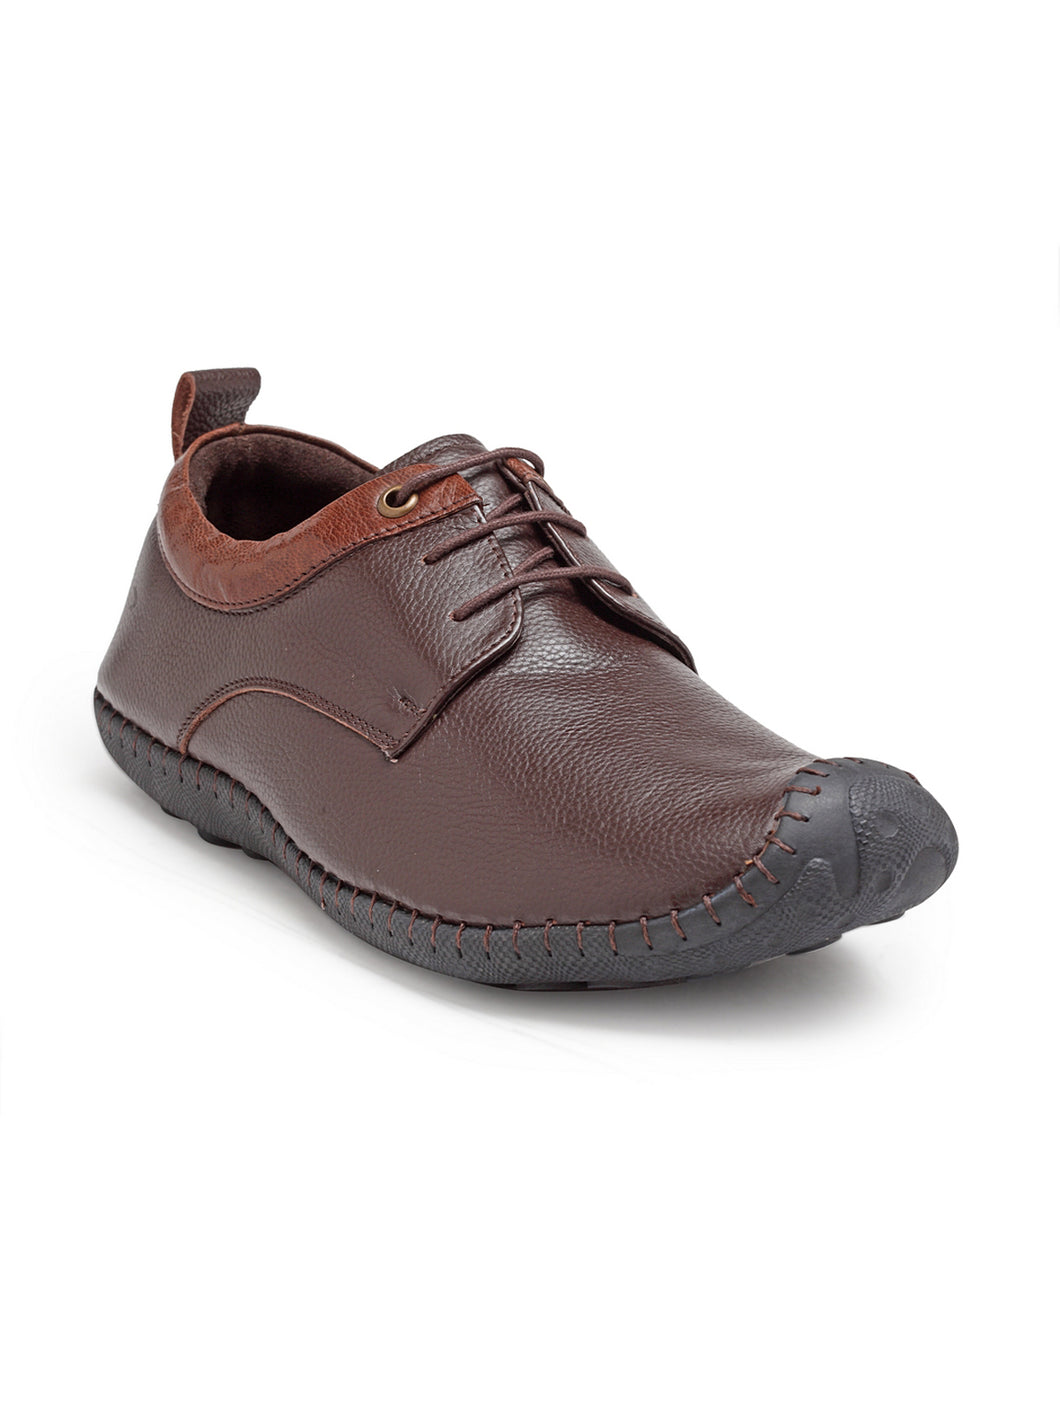 Teakwood Genuine Leather Brown Derby Shoes